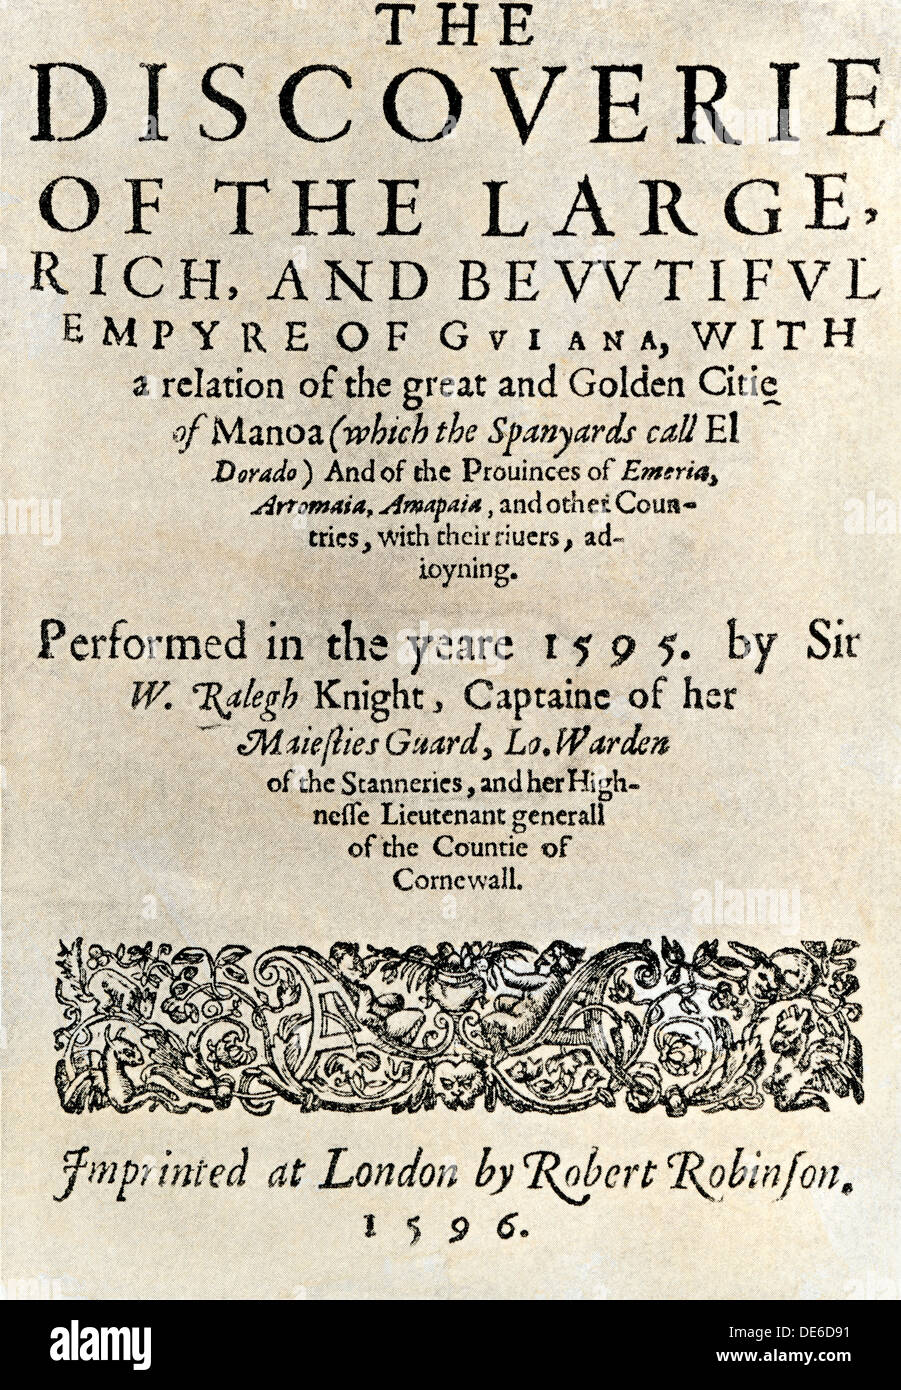 Titel Seite von Walter Raleigh's Buch "Discoverie... Guayana", London, 1596. Holzschnitt mit einem Aquarell waschen Stockfoto